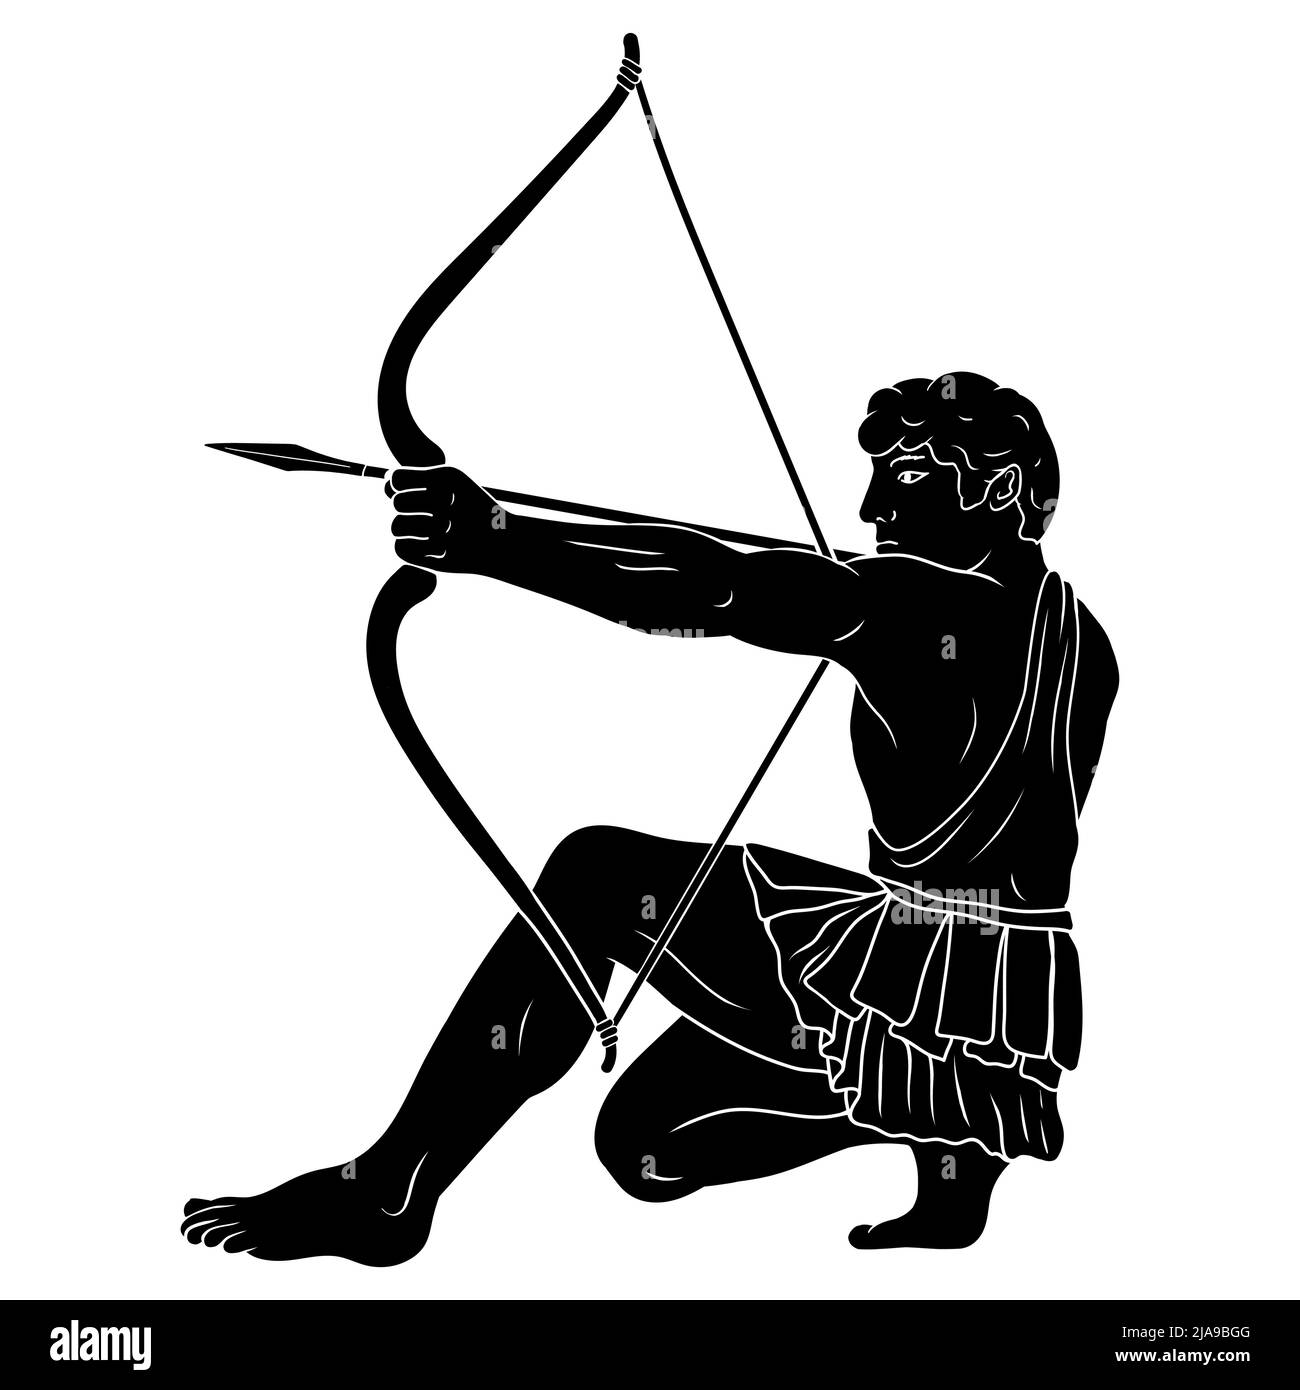 El antiguo héroe griego Hércules dispara desde un arco a un objetivo. Silueta aislada sobre un fondo blanco. Ilustración del Vector